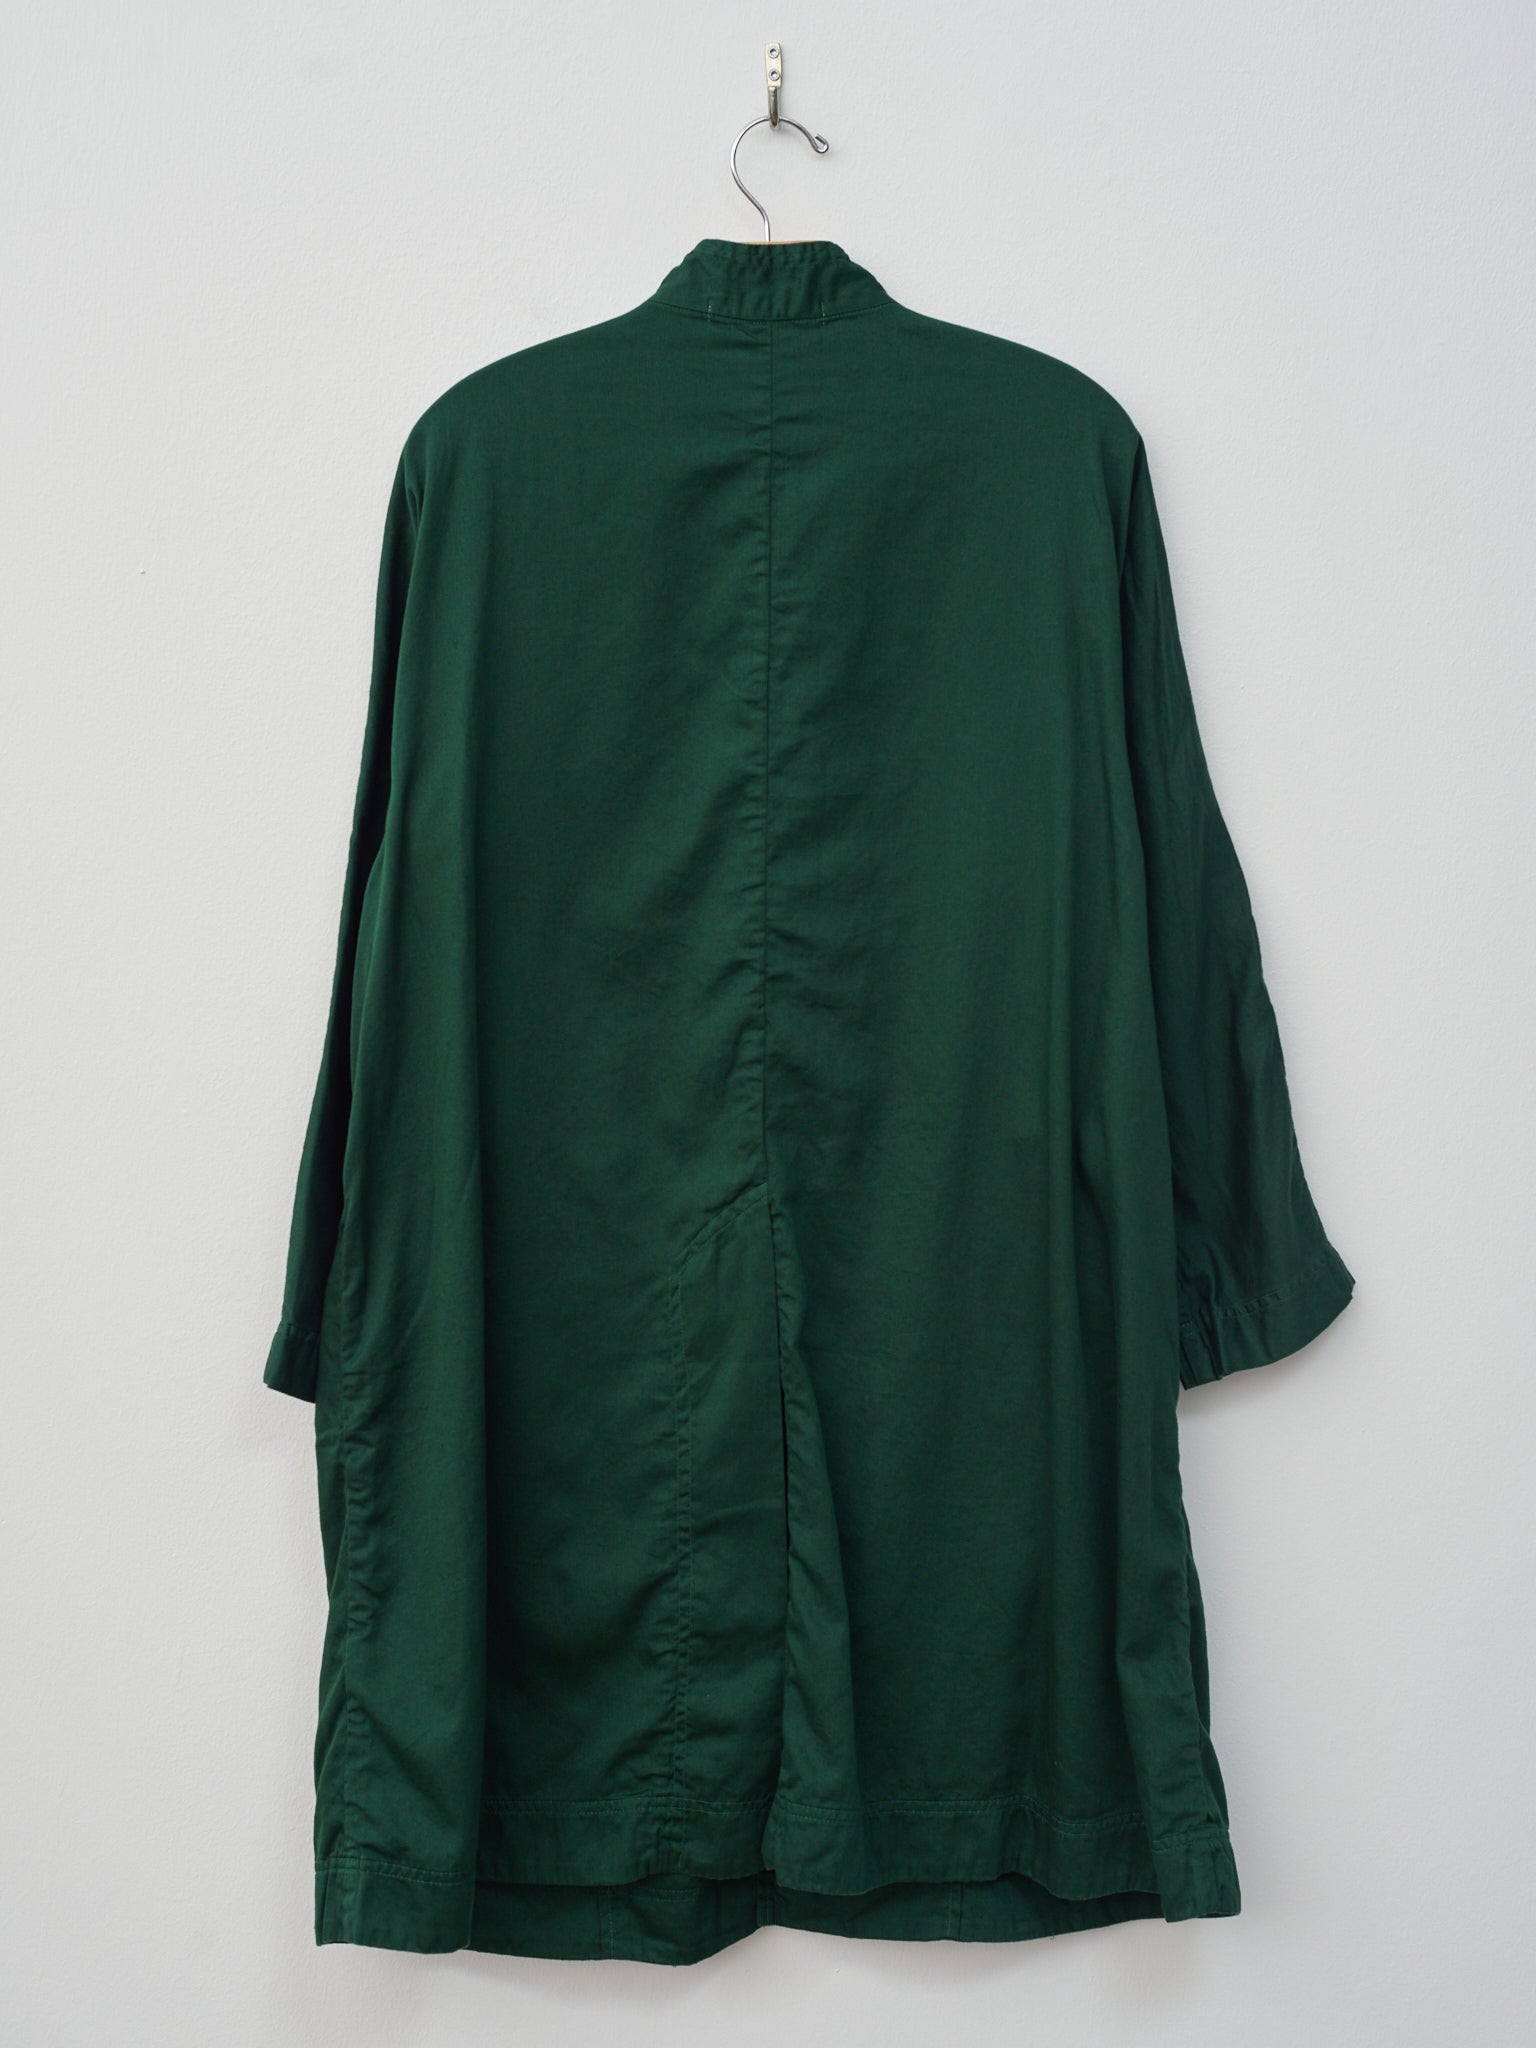 Namu Shop - Veritecoeur Arrow Coat - Green